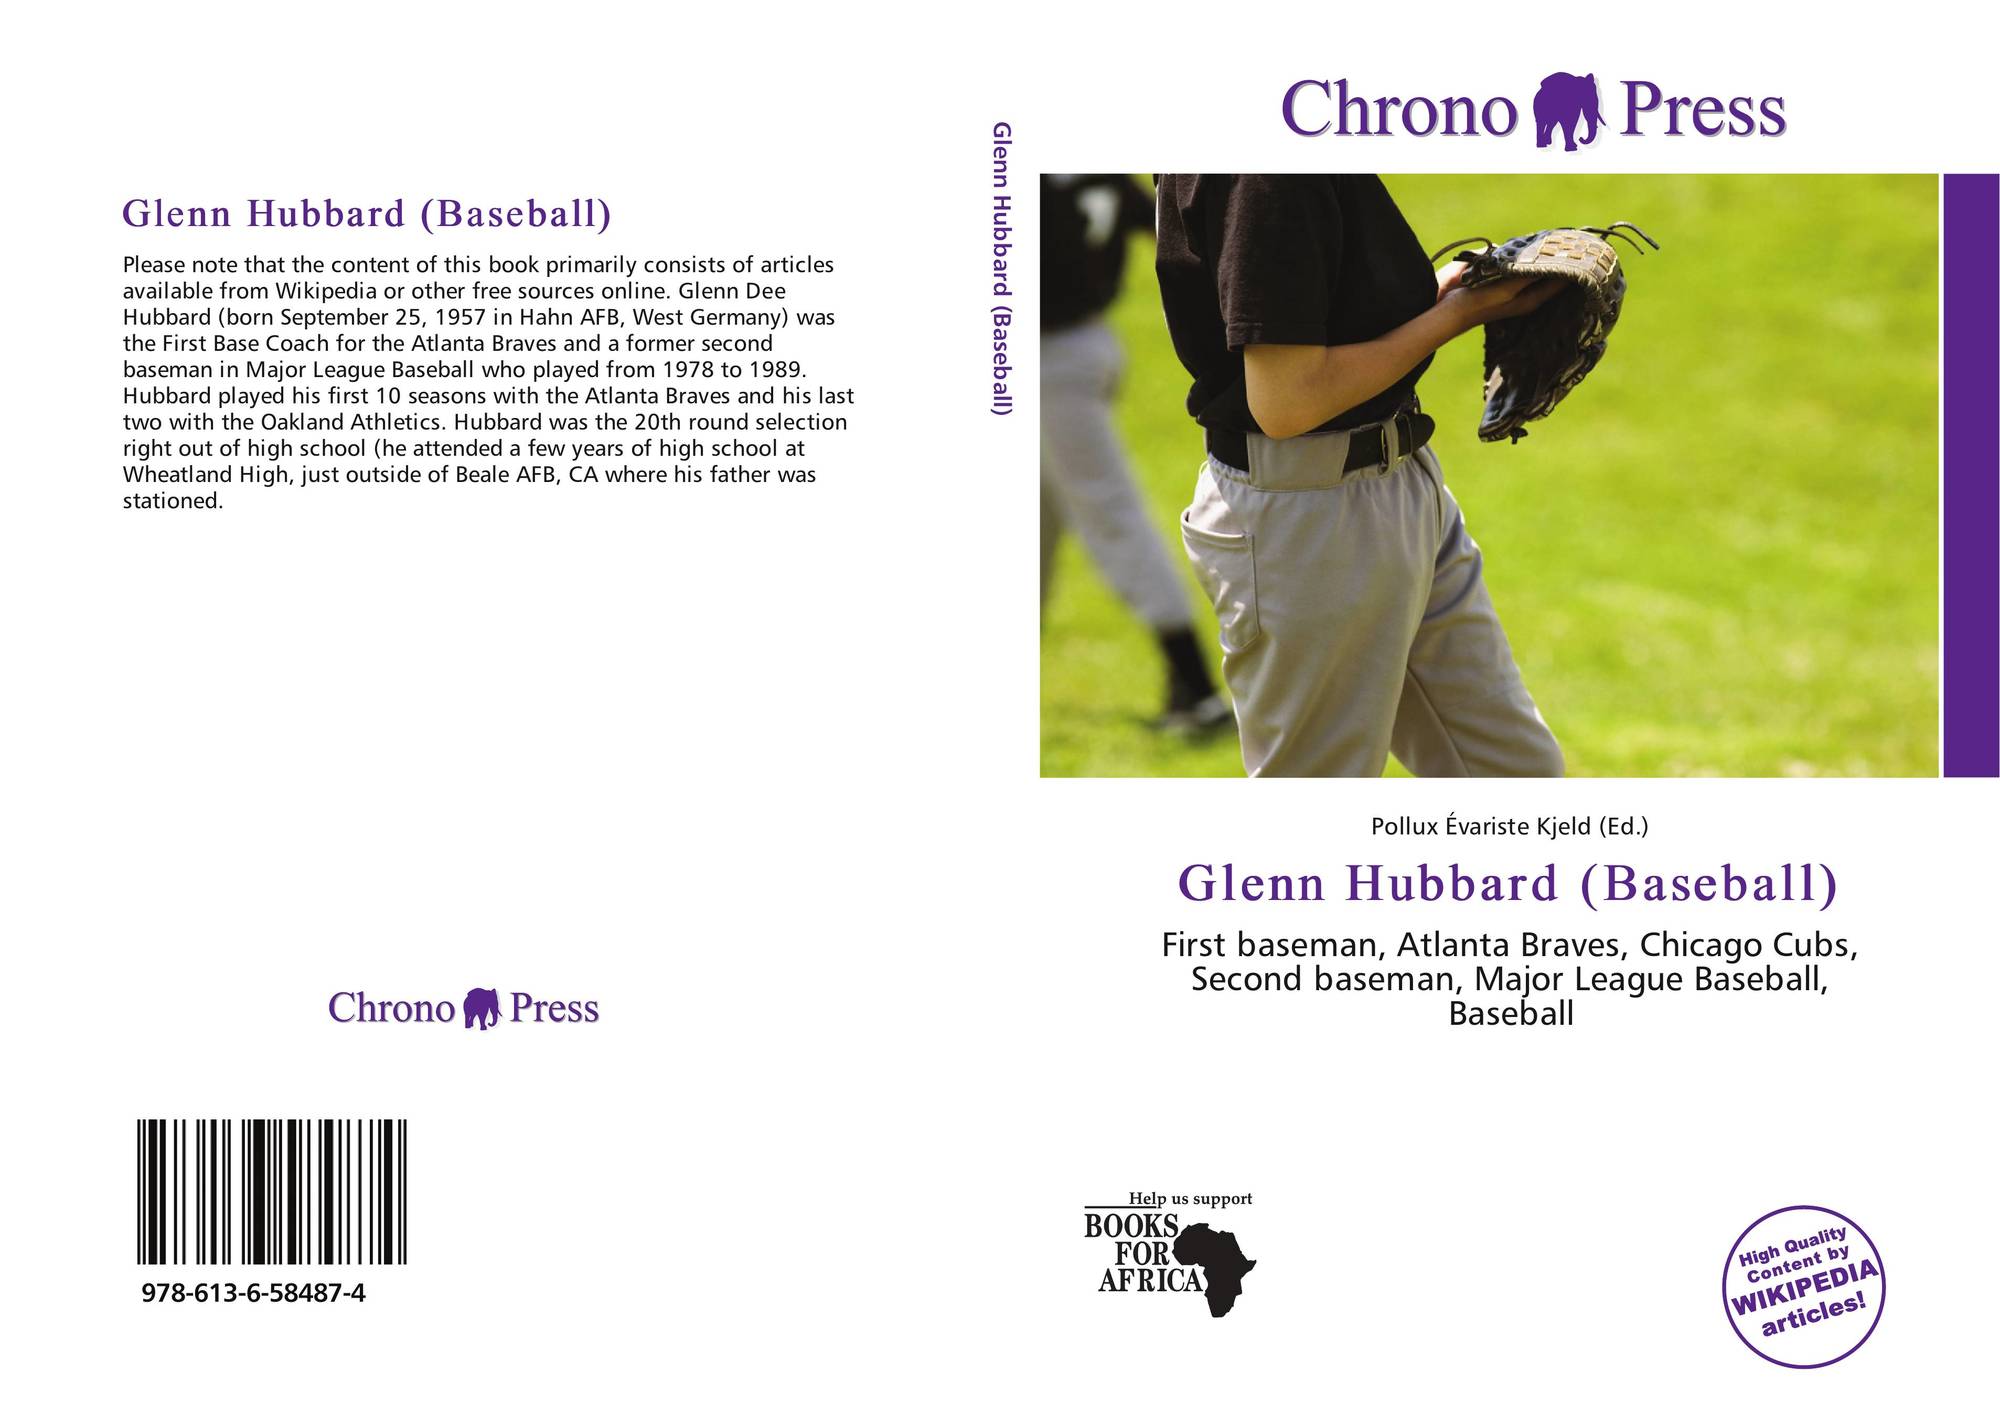 Glenn Hubbard (baseball) - Wikipedia